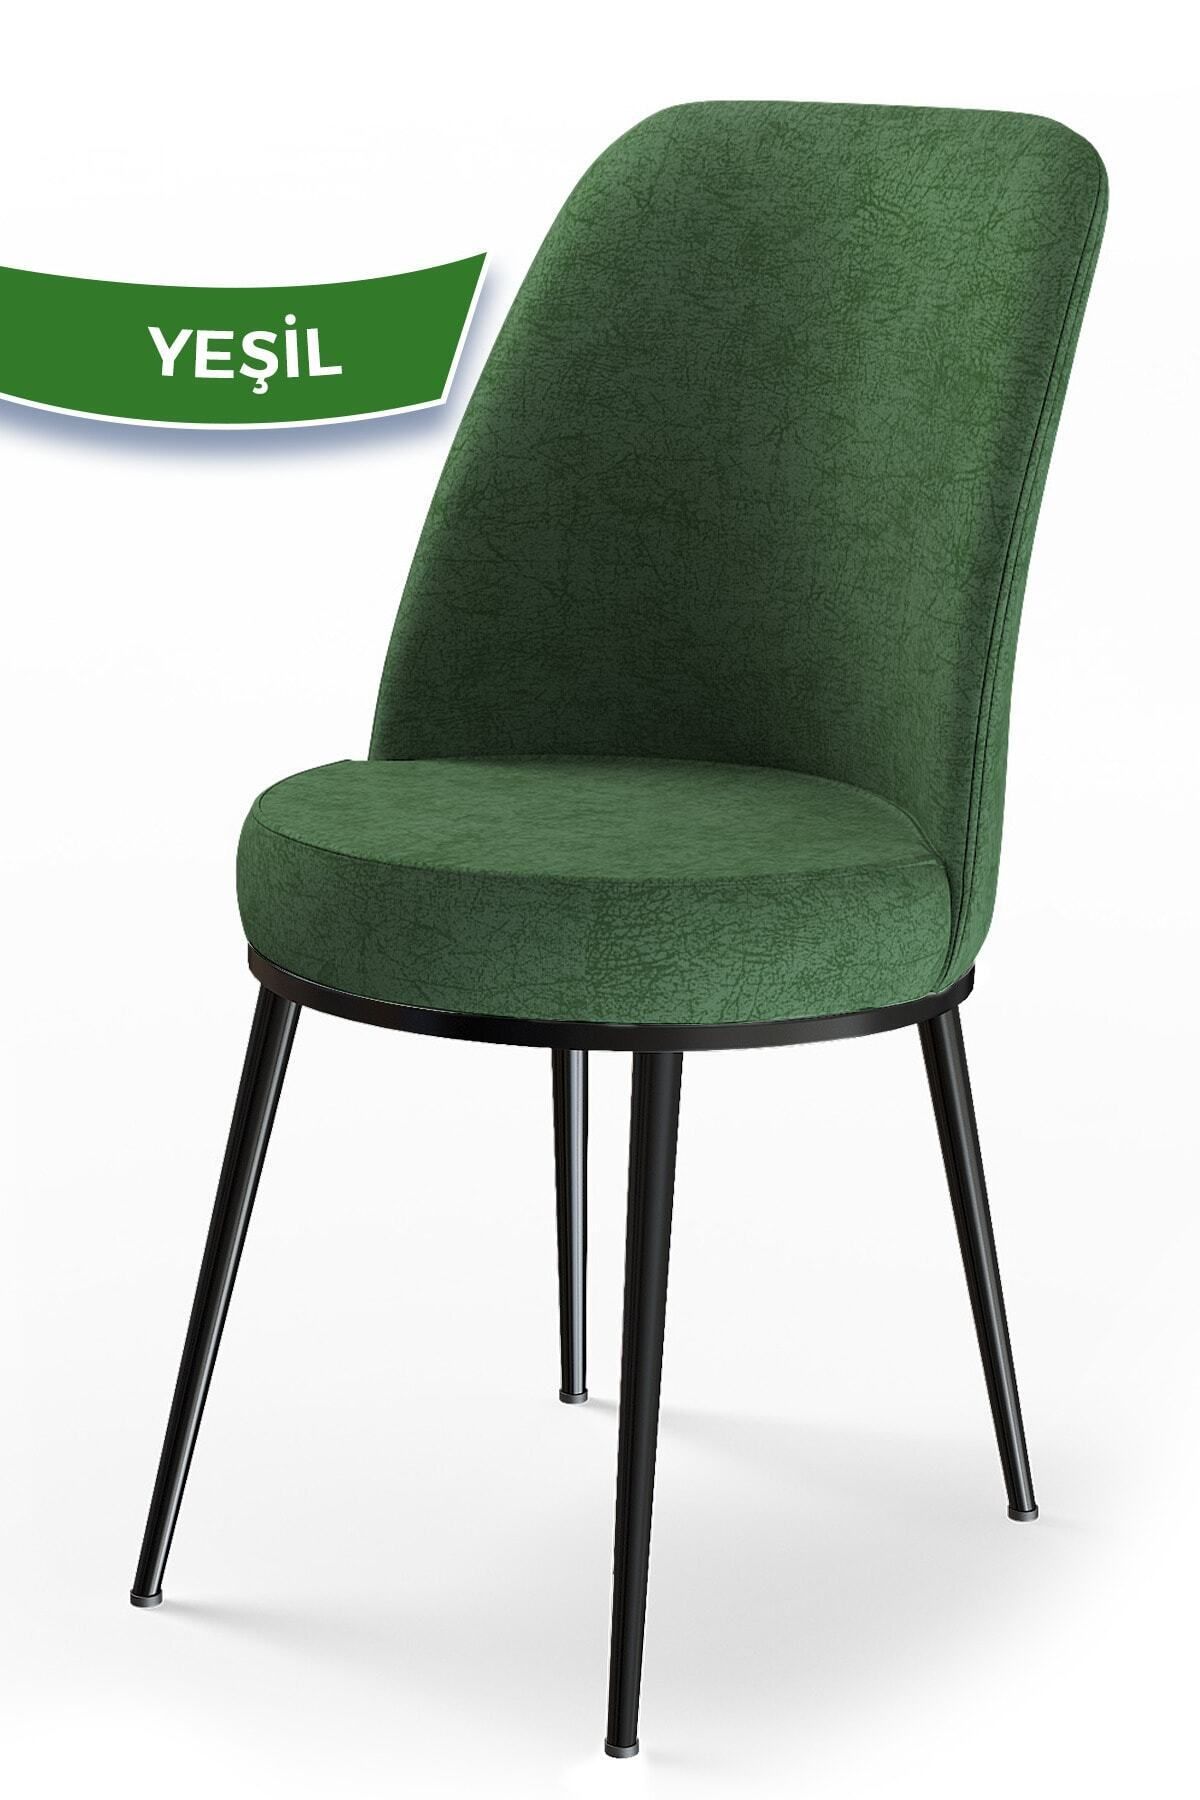 Canisa Concept Dexa Serisi Haki Yeşil Renk Sandalye Mutfak Sandalyesi, Yemek Sandalyesi Ayaklar Siyah